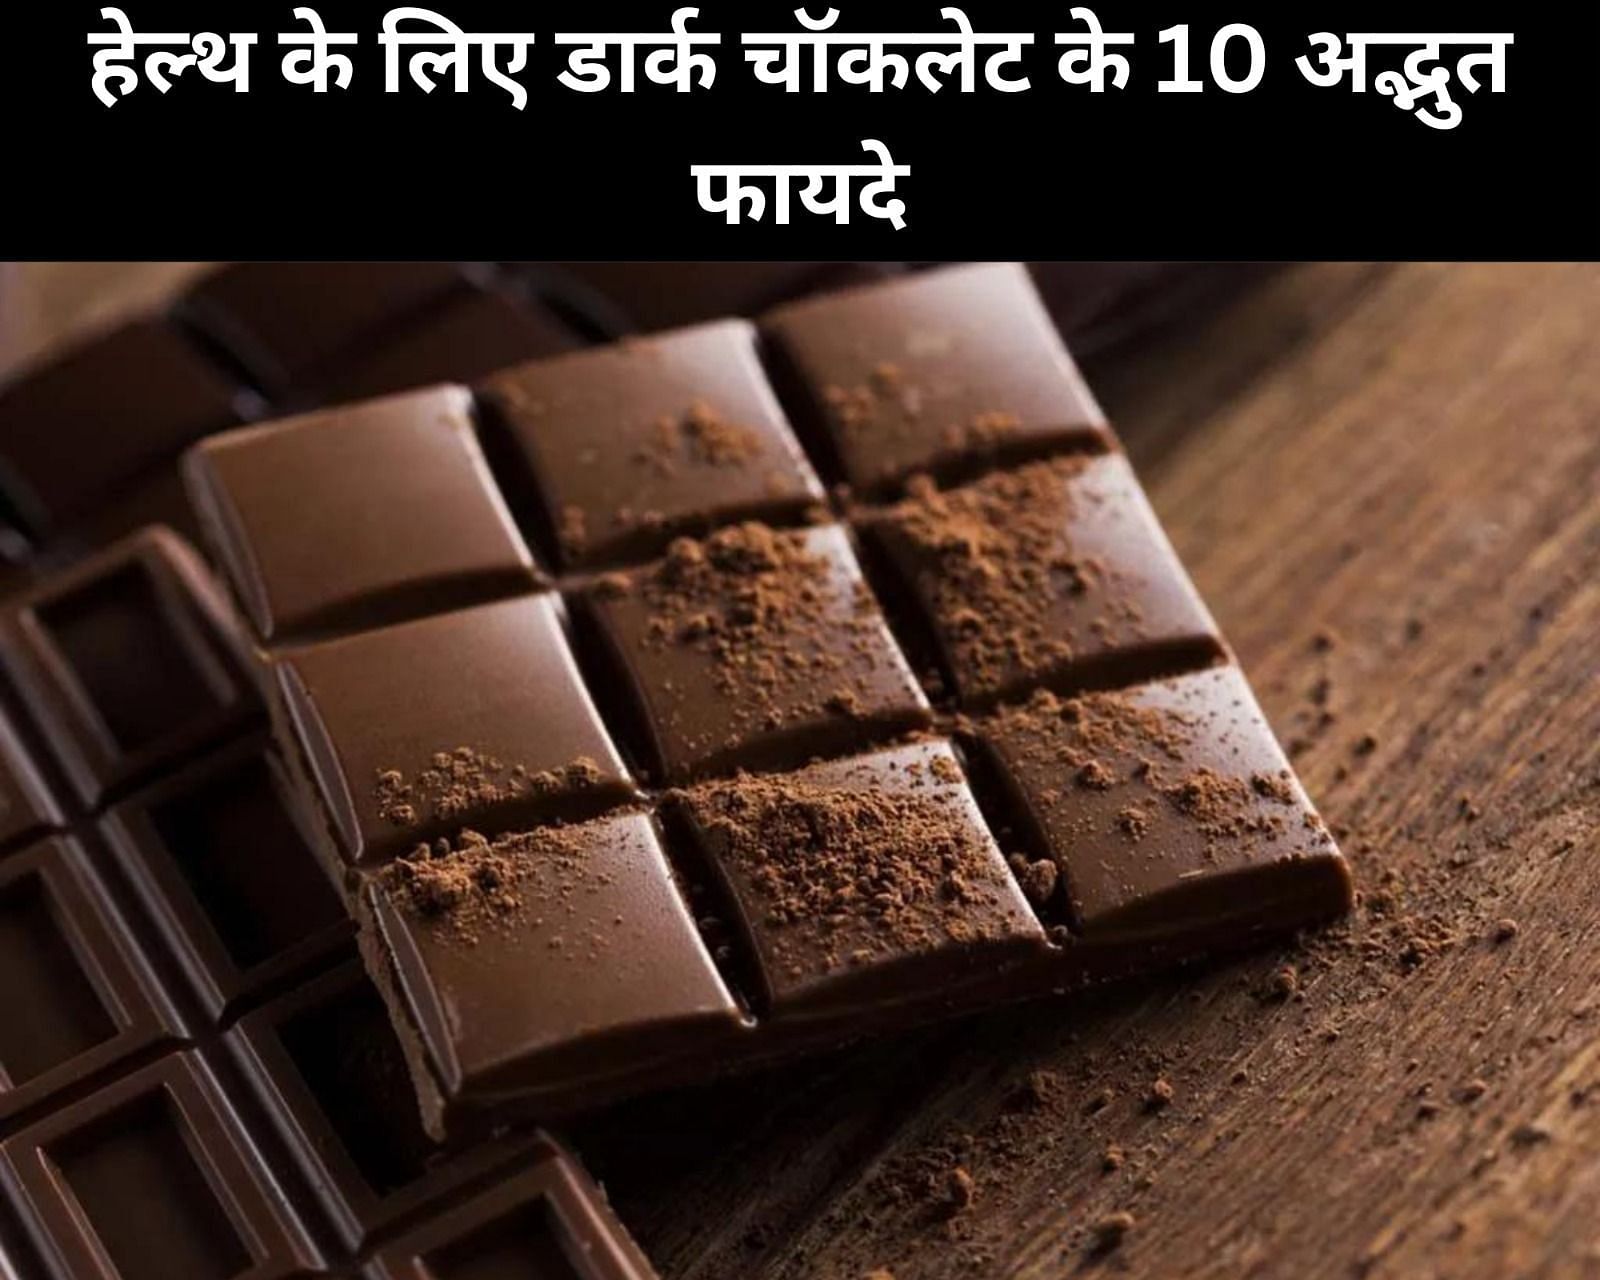 हेल्थ के लिए डार्क चॉकलेट के 10 अद्भुत फायदे (फोटो - sportskeedaहिन्दी)